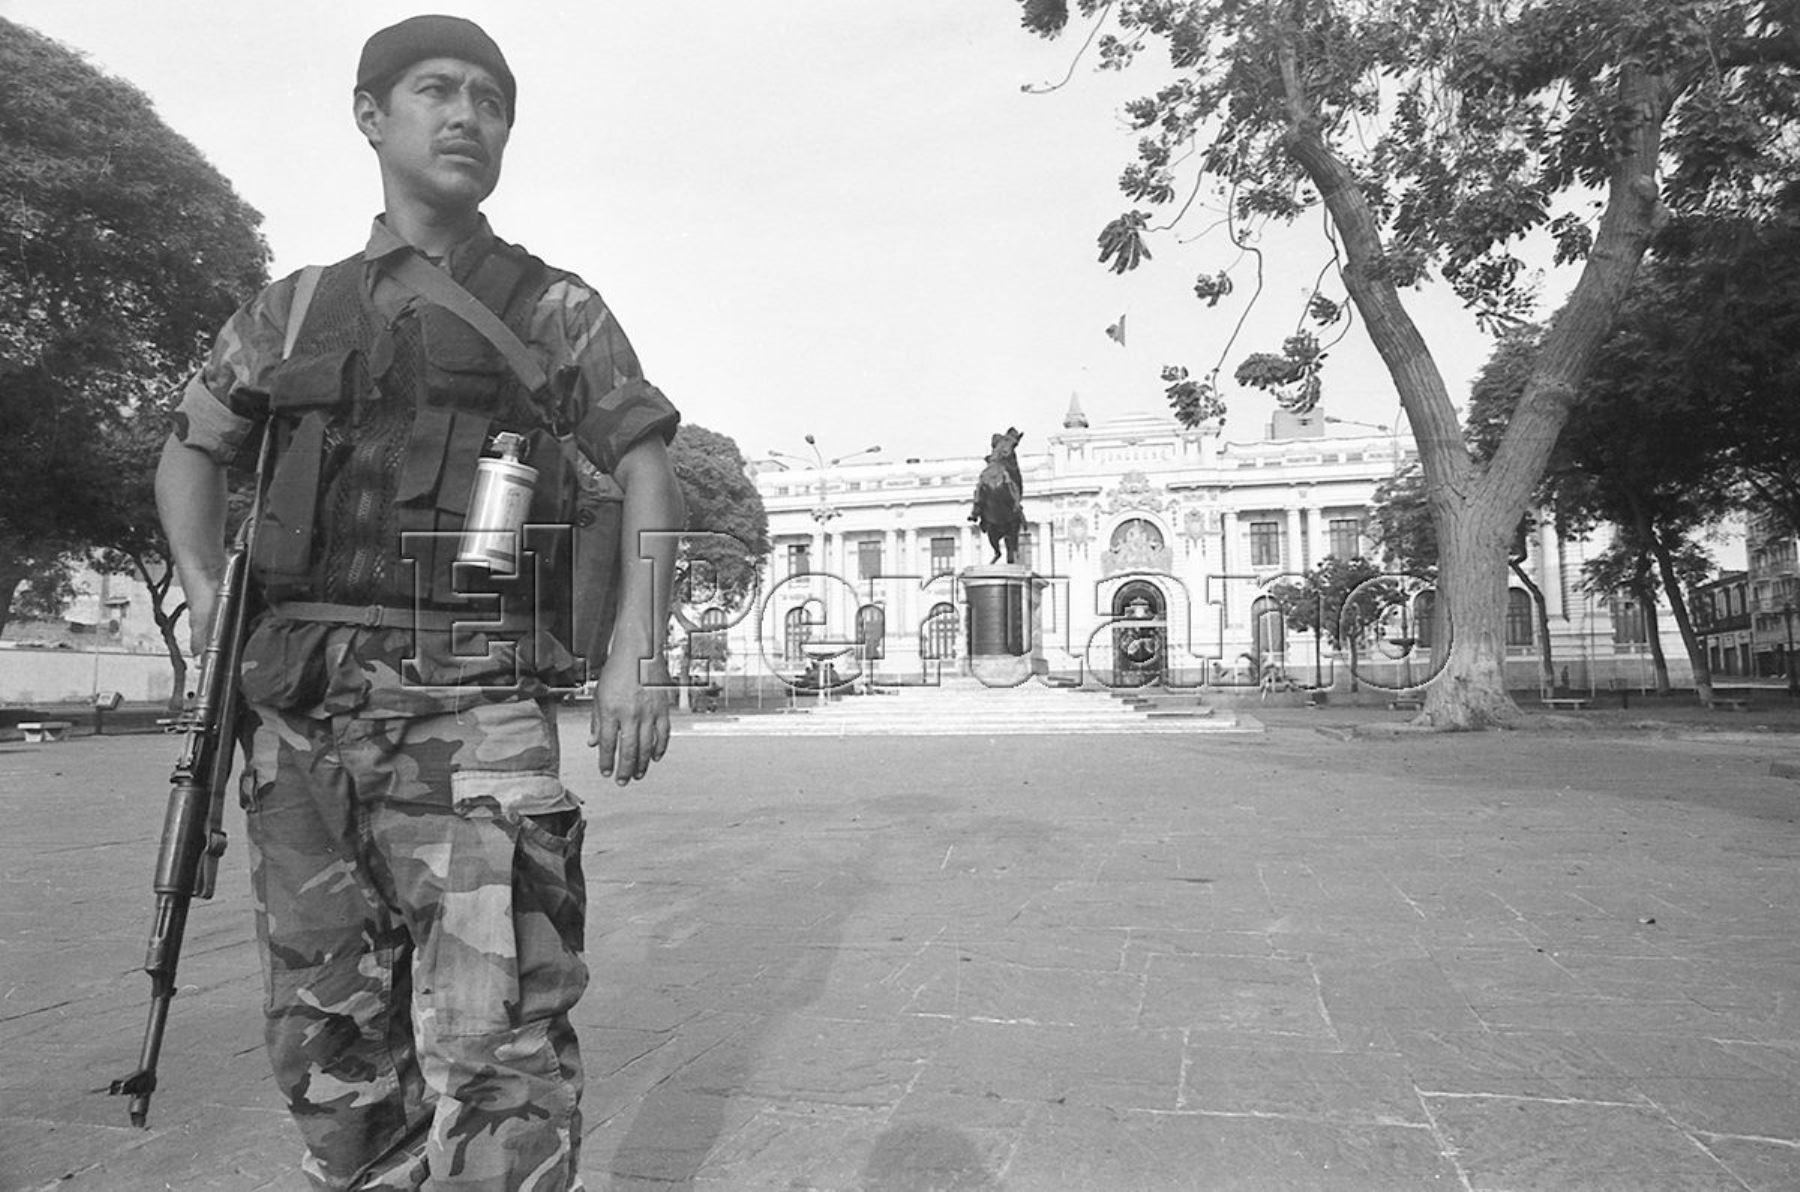 Un militar custodia el frontis del Congreso, que fue cerrado por orden del entonces presidente Alberto Fujimori, el 5 de abril de 1992.